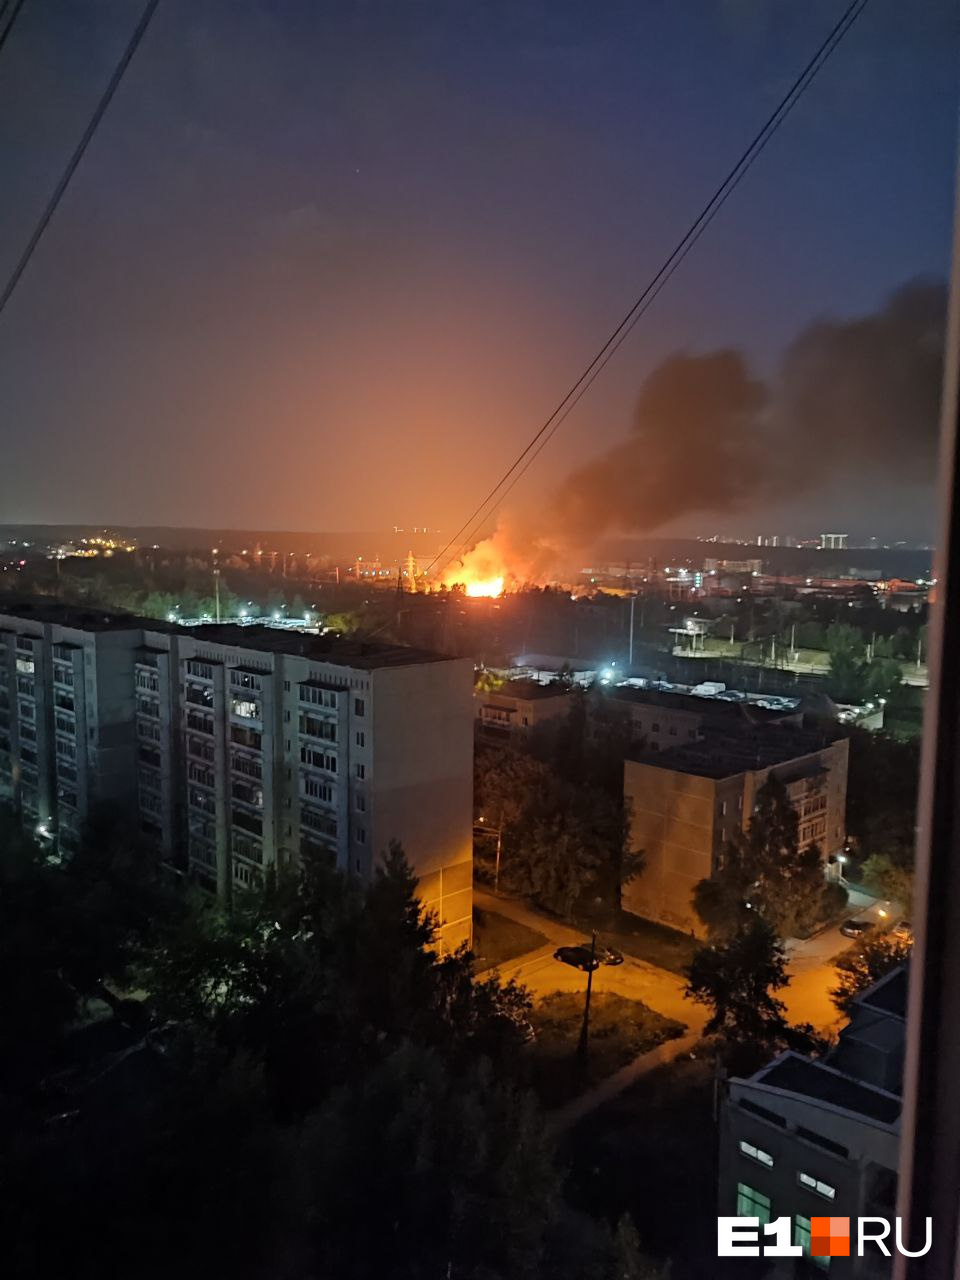 «Звуки взрывов все сильнее». В Екатеринбурге вспыхнул мощный пожар: видео